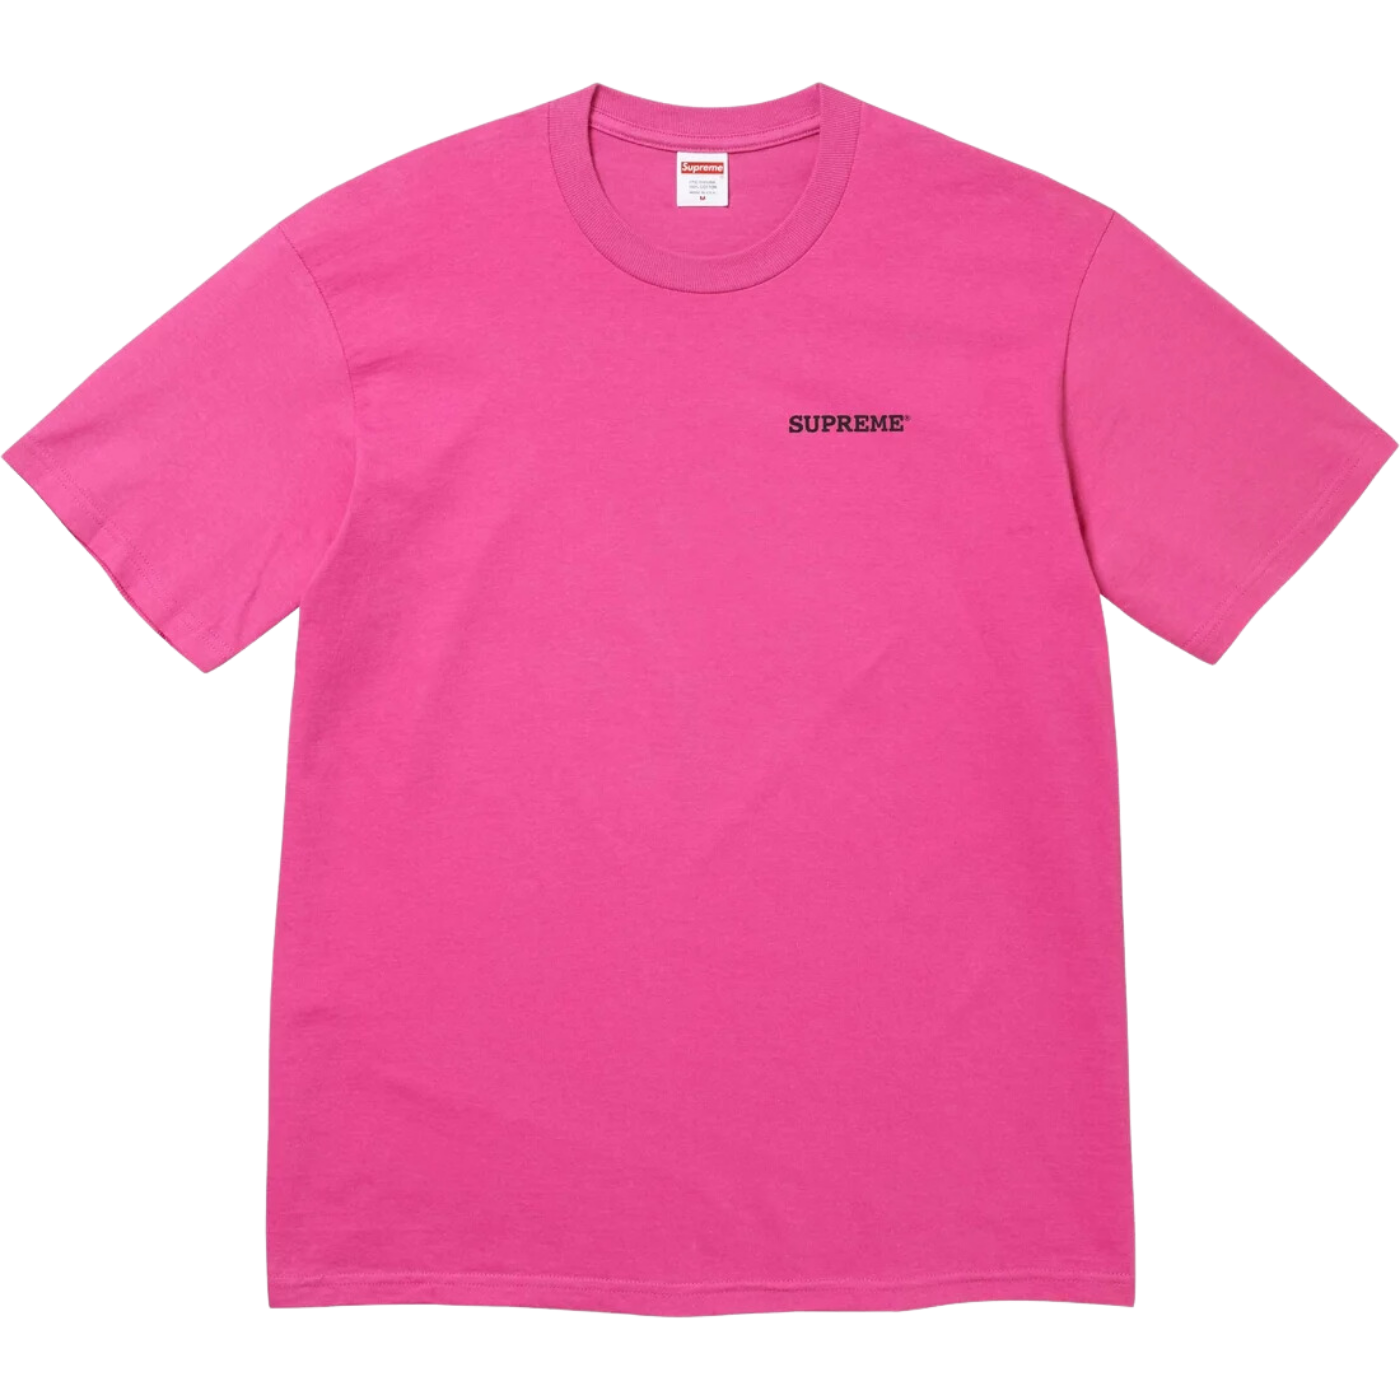 Camiseta Supreme Patchwork Rosa